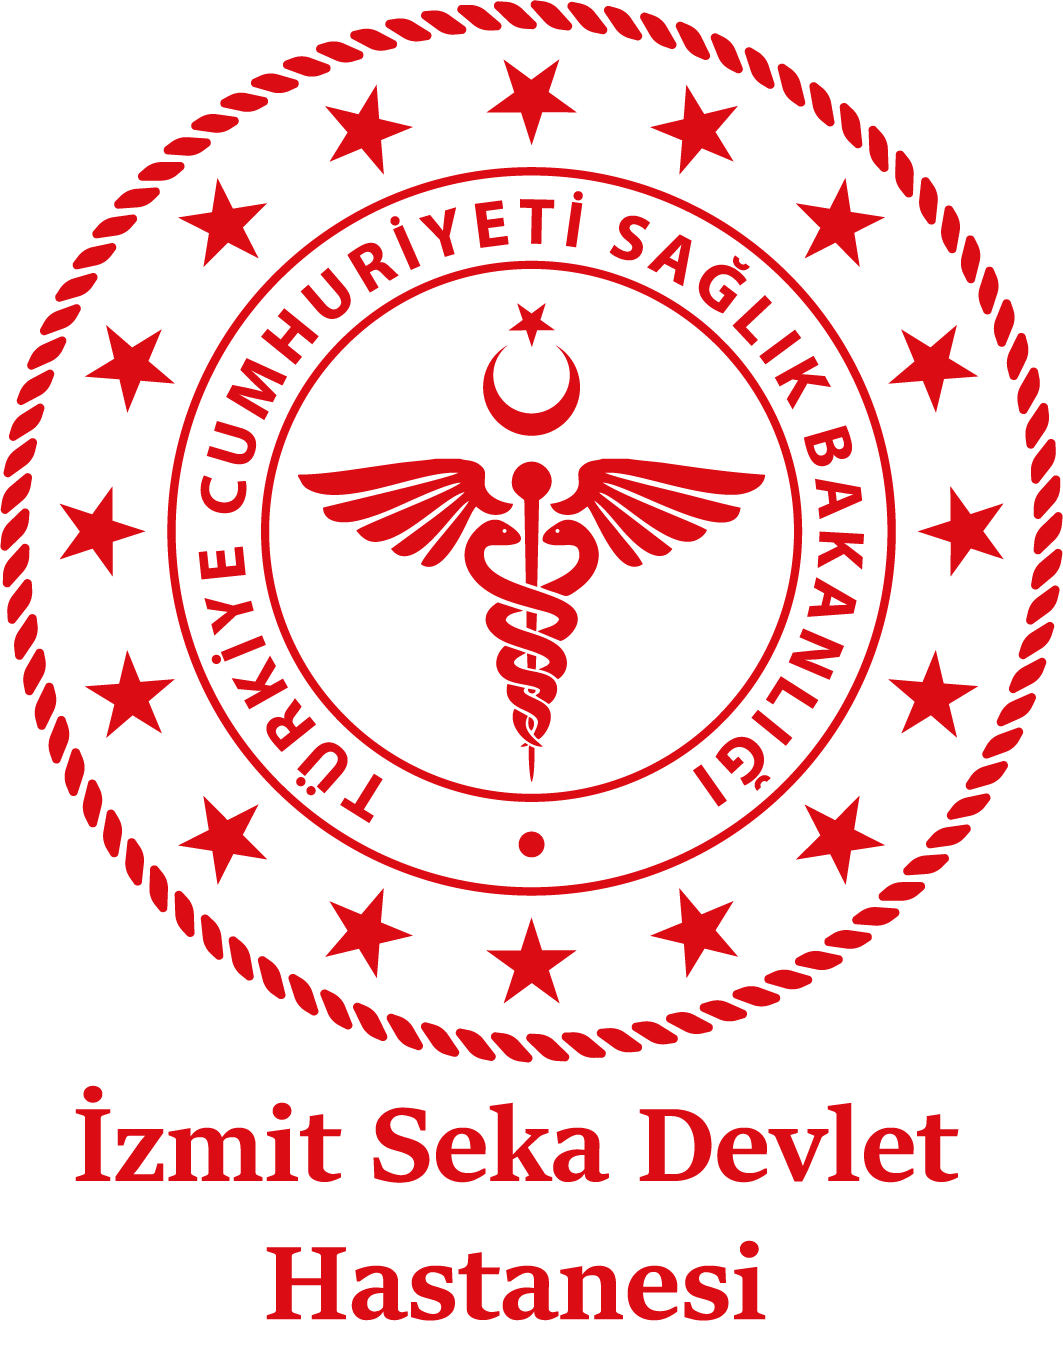 izmit-seka-devlet-hastanesi-logo